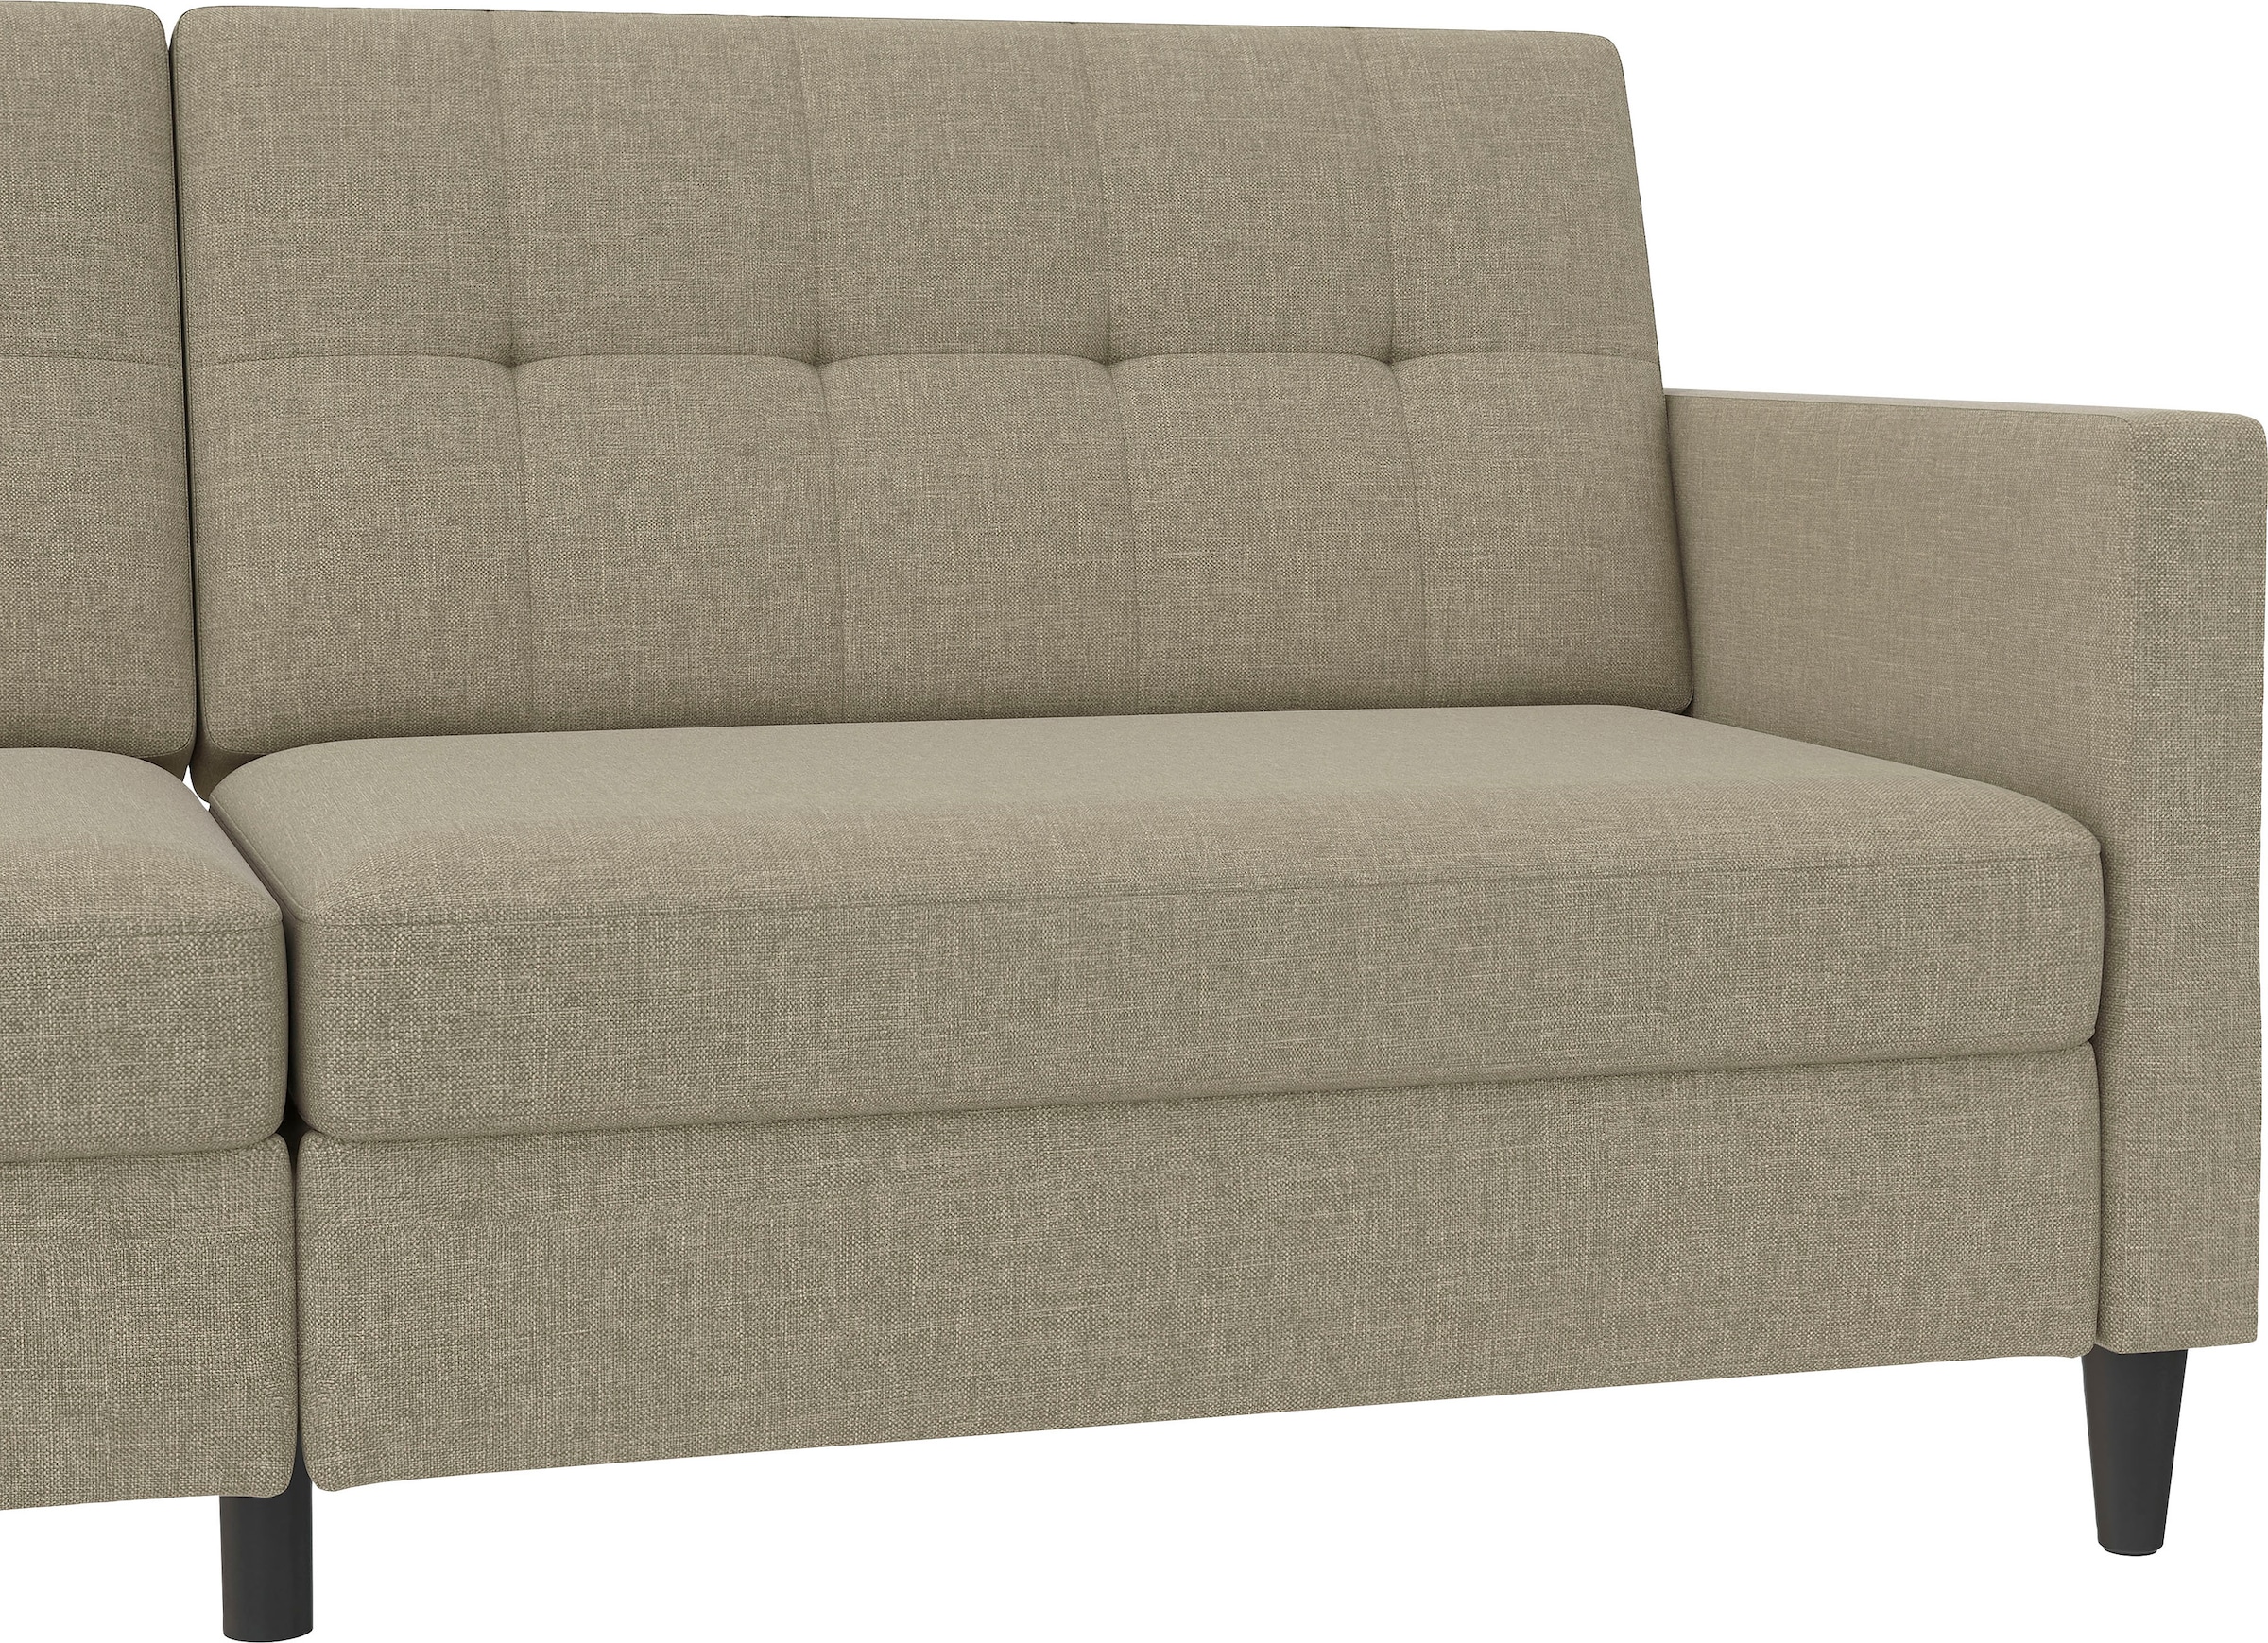 Dorel Home 3-Sitzer »Hartford«, Bettfunktion, Rückenlehne 2-teilig, 3-fach verstellbar, Sitzhöhe 43 cm